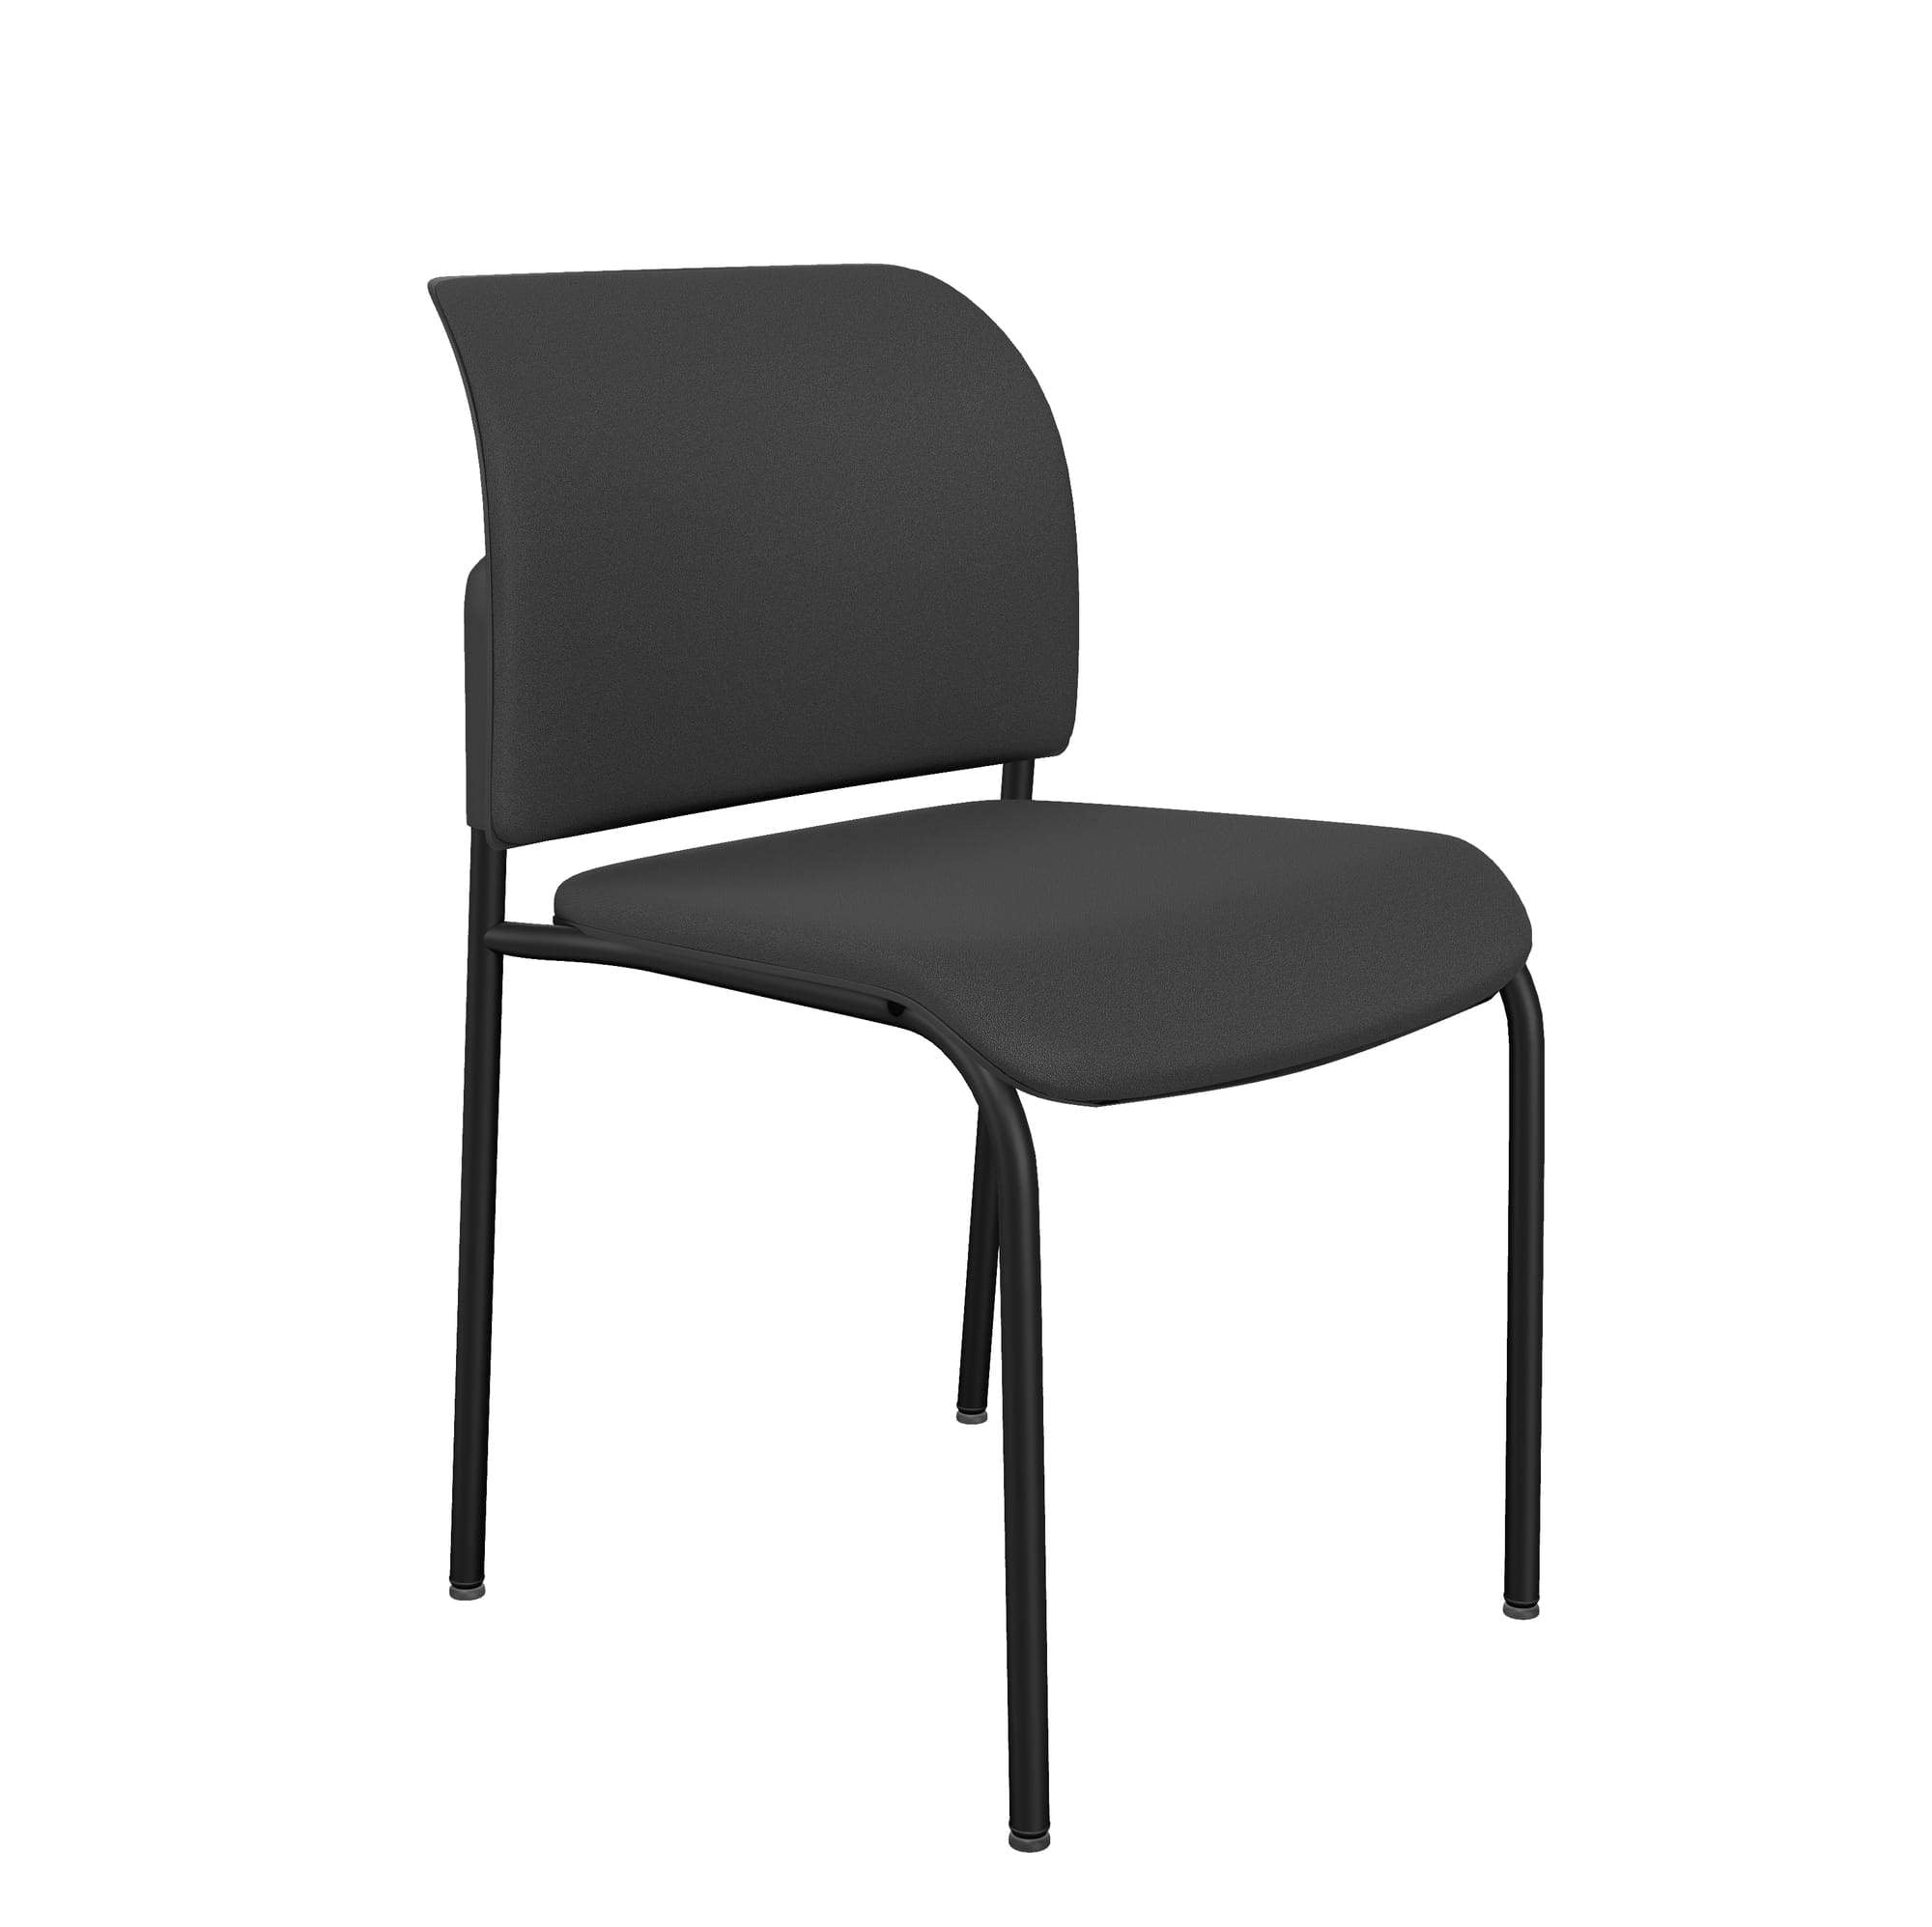 Bit Upholstered Seat and Backrest Chair, 4-Legged Frame - Model 570H